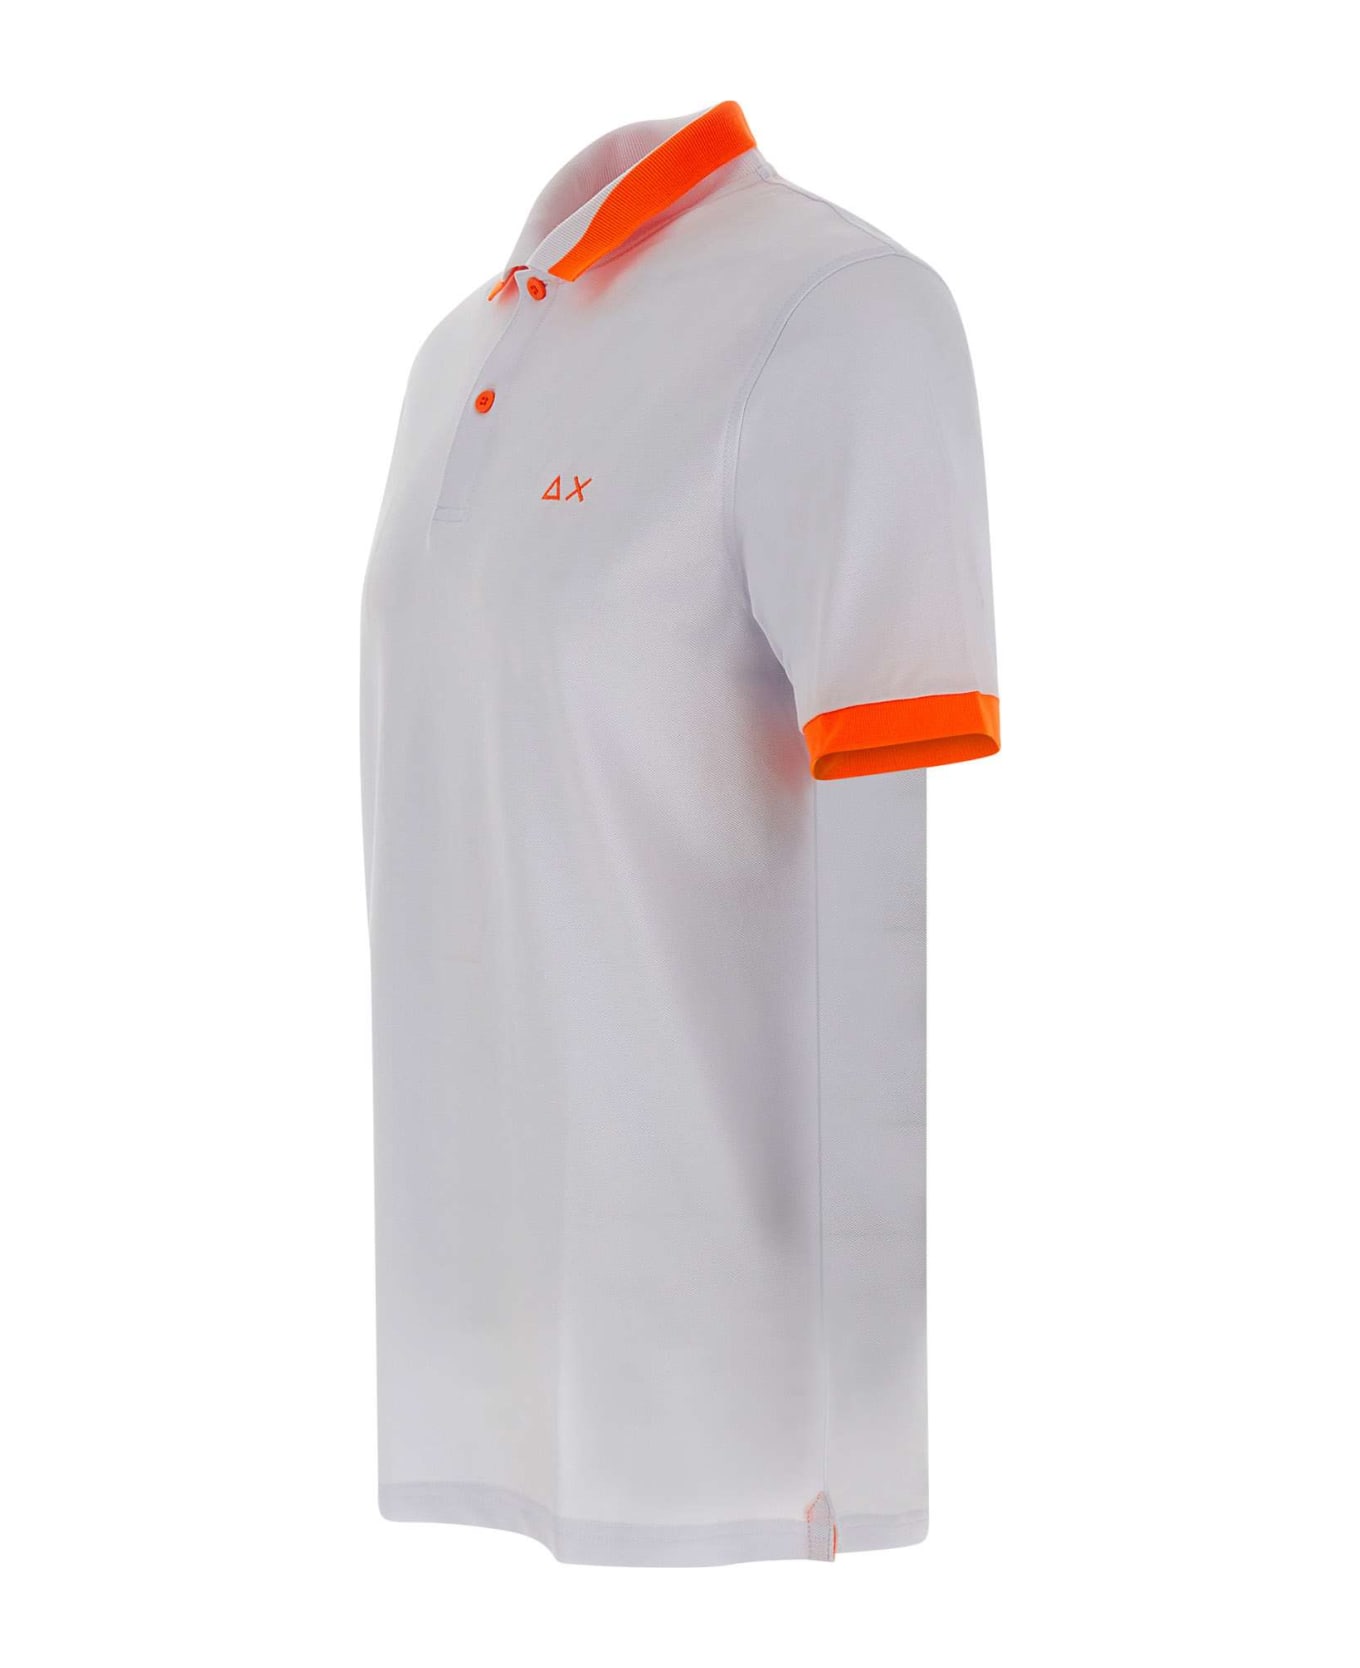 Sun 68 "big Stripe" Cotton Polo Shirt - WHITE ポロシャツ